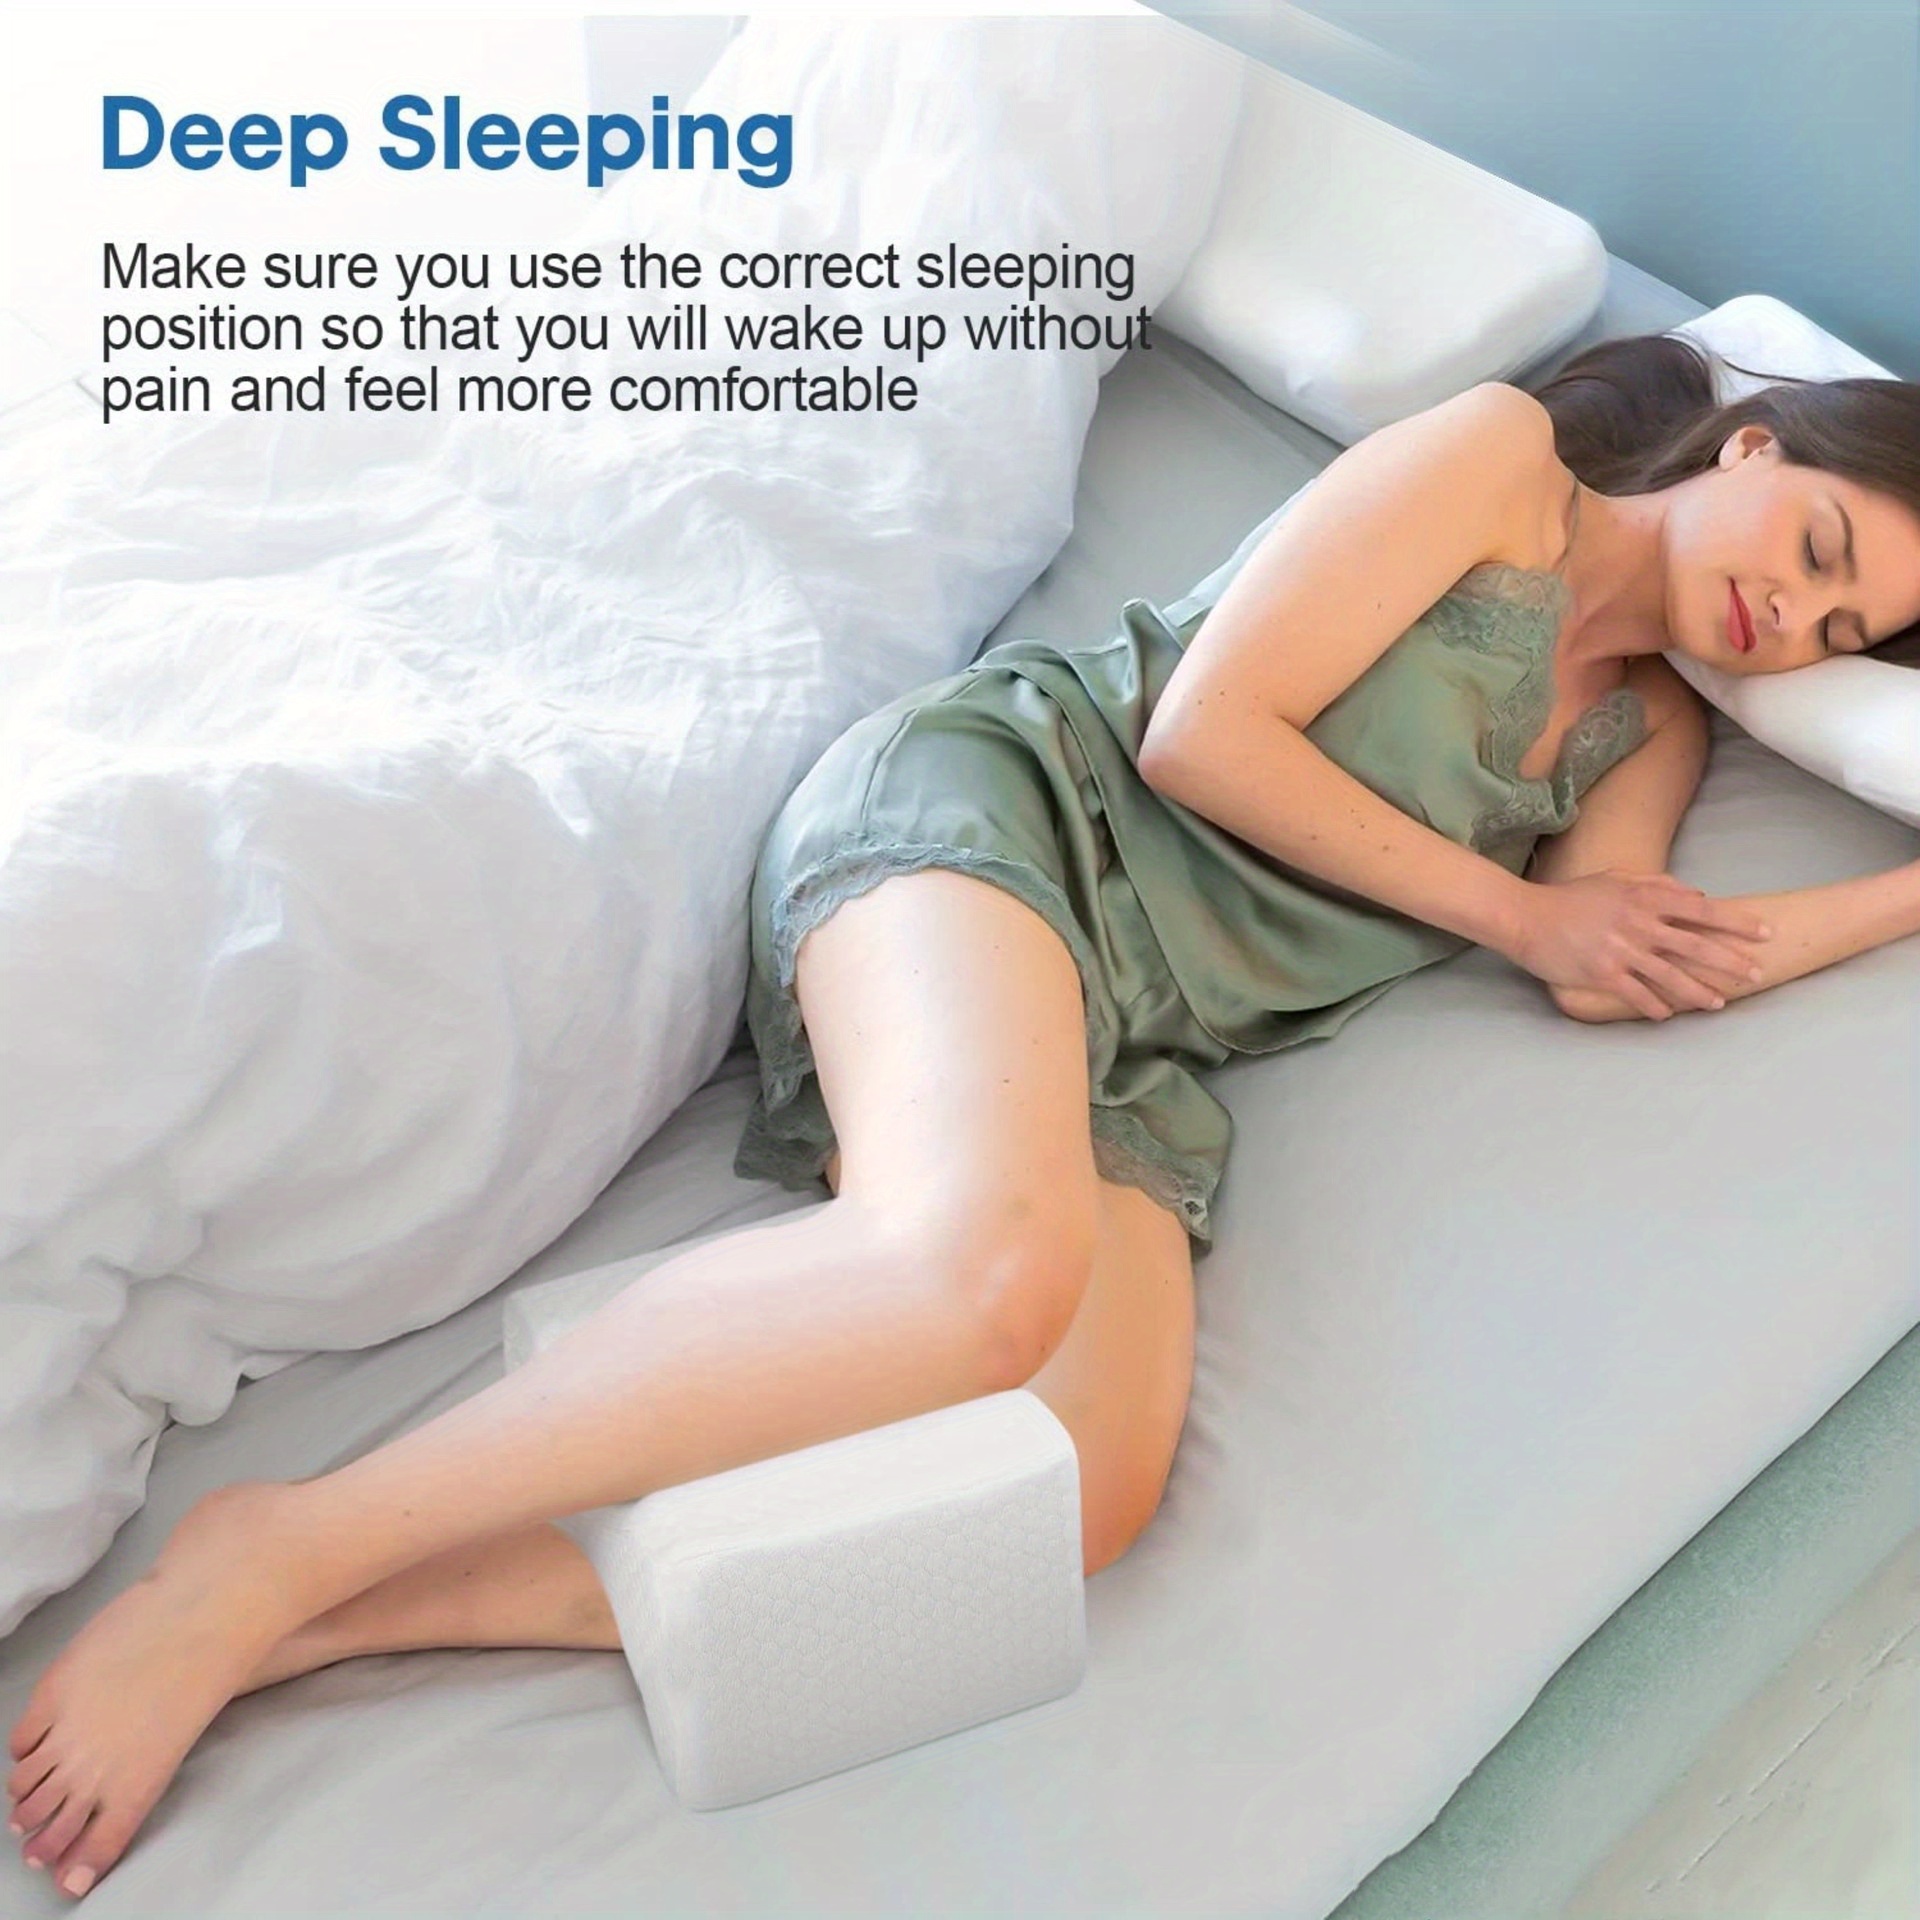 Knee Pillow For Side Sleepers & Pregnancy  Memory Foam Leg / Knee Pillow  For Sleeping – BottomDr